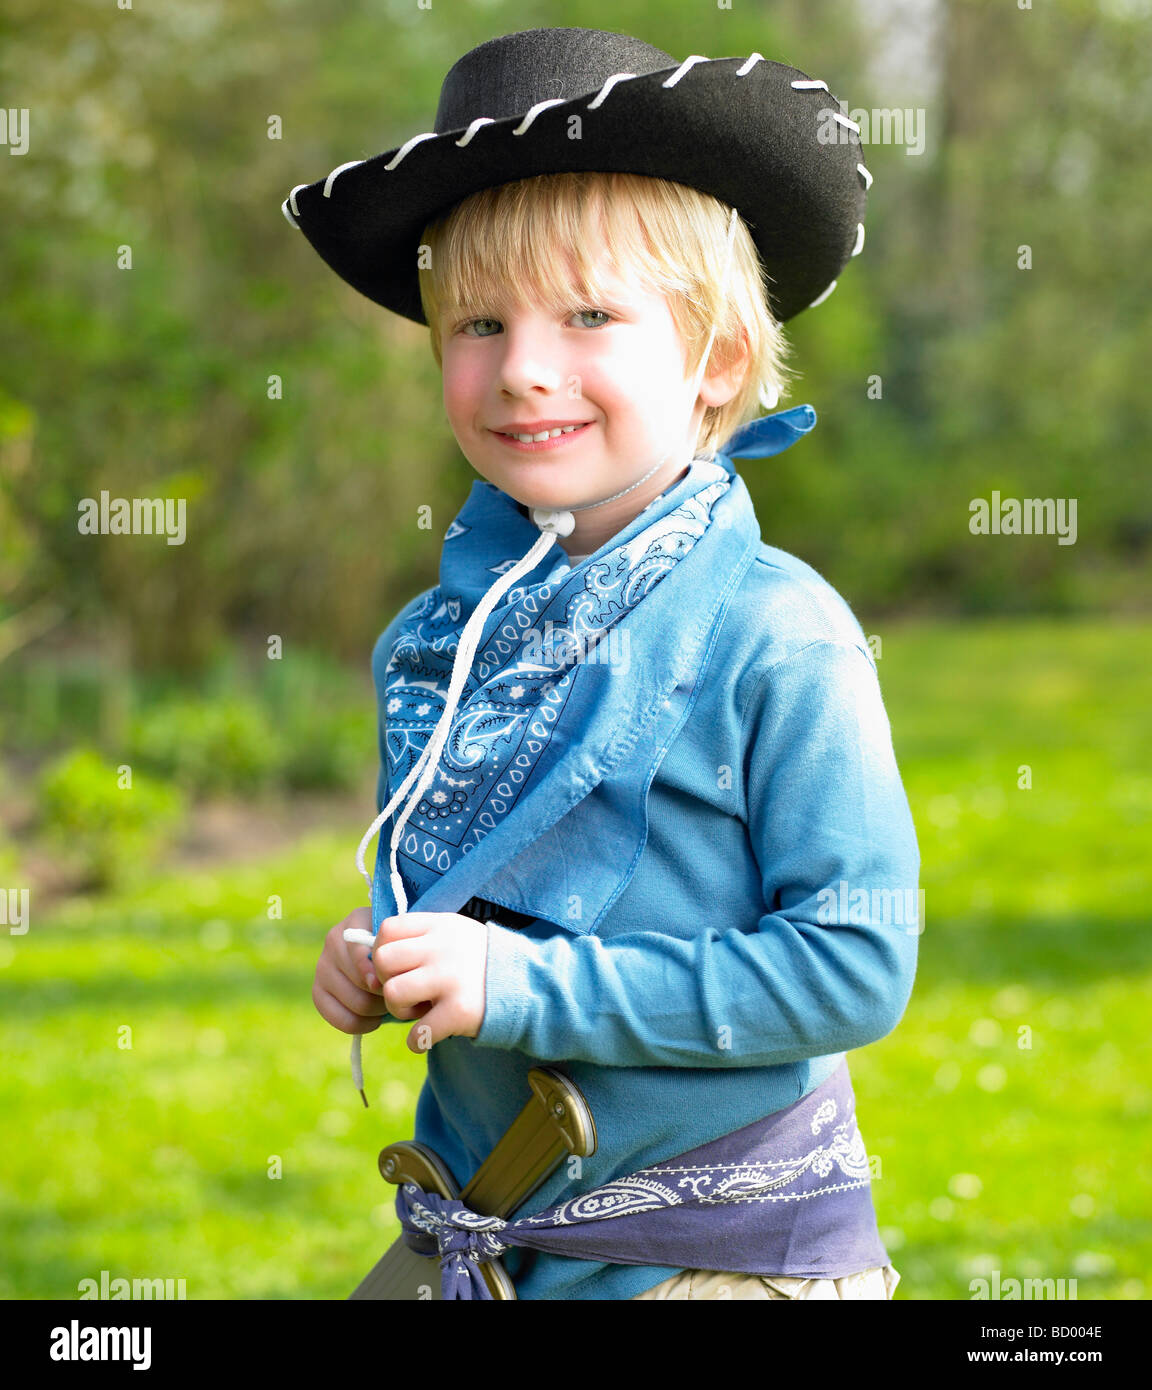 Junge in einem Cowboy-Kostüm Stockfoto